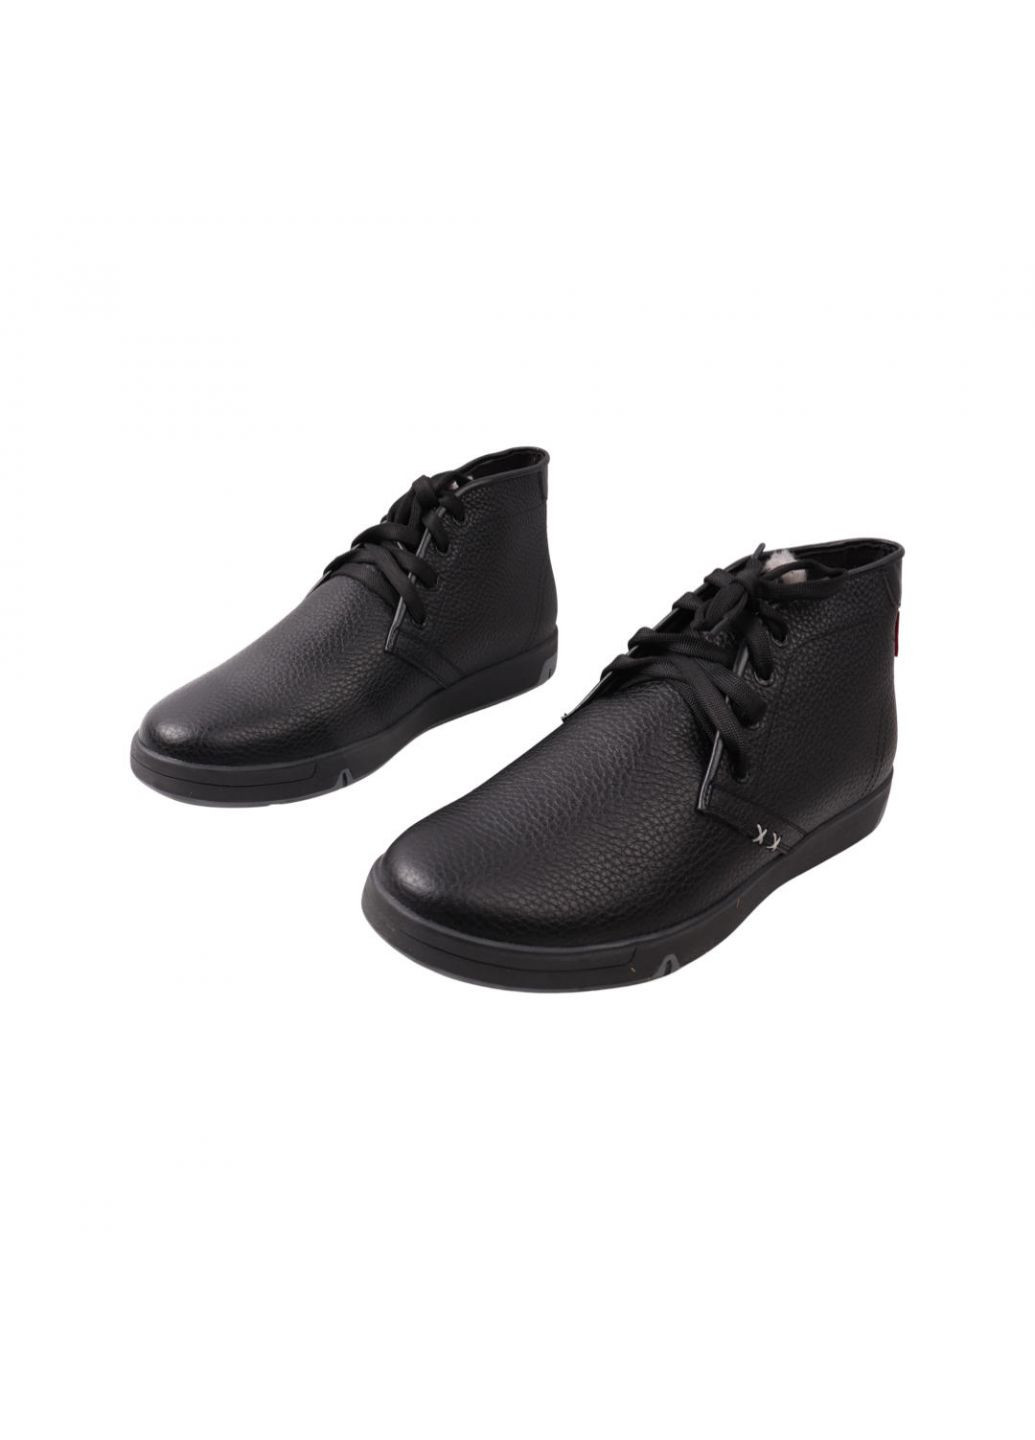 Черные ботинки мужские черные натуральная кожа New Man